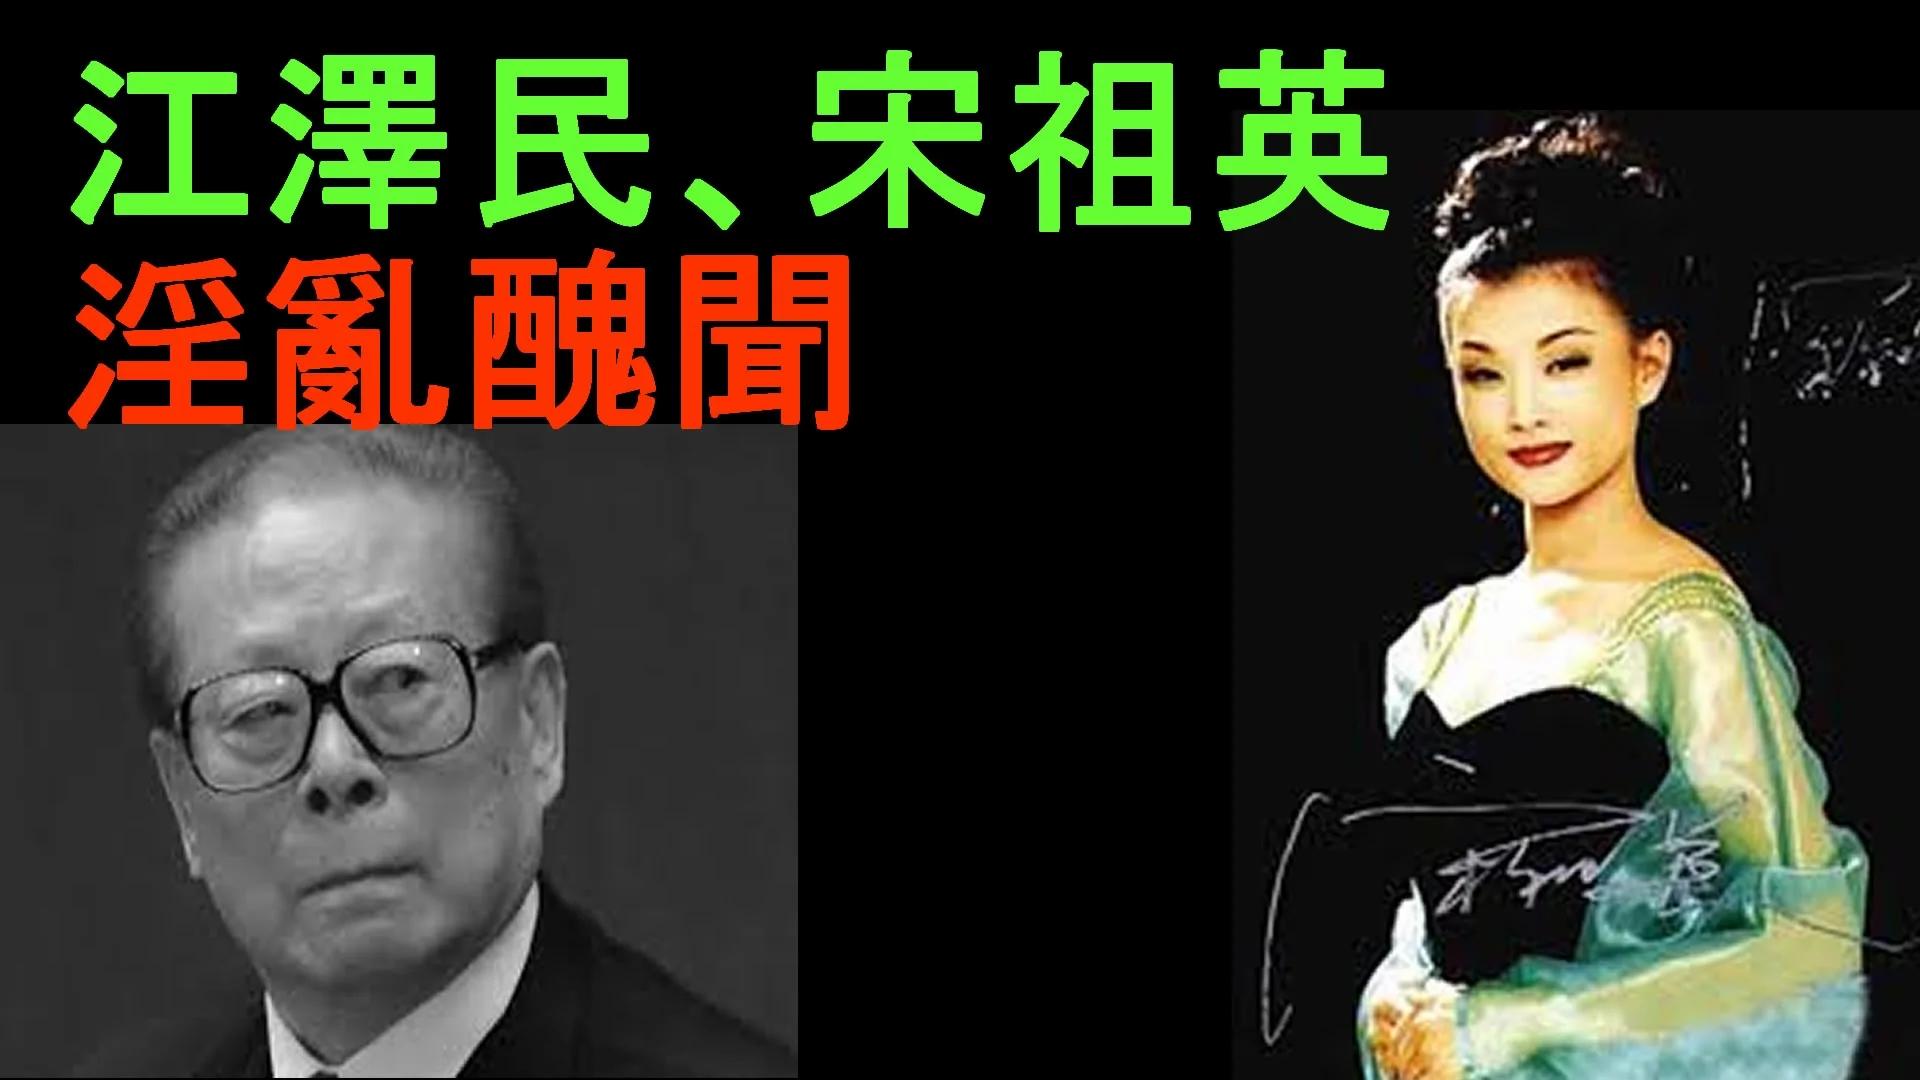 “江泽民 丑闻”的图片搜索结果